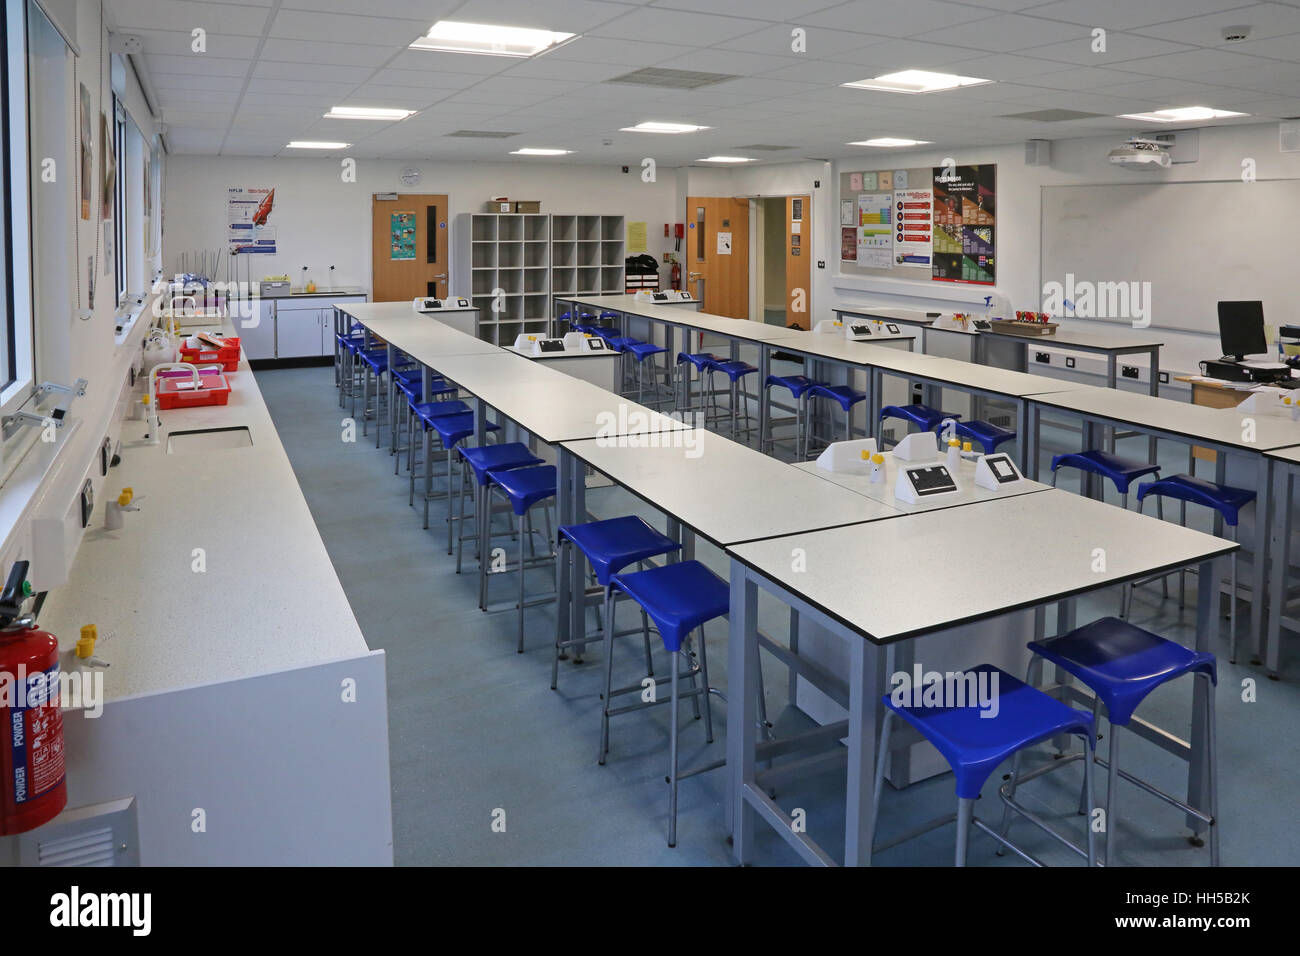 Scuola di scienza in una nuova scuola secondaria del Regno Unito. Mostra banchi da laboratorio, sgabelli e attrezzature scientifiche. Vuoto, senza alunni. Foto Stock